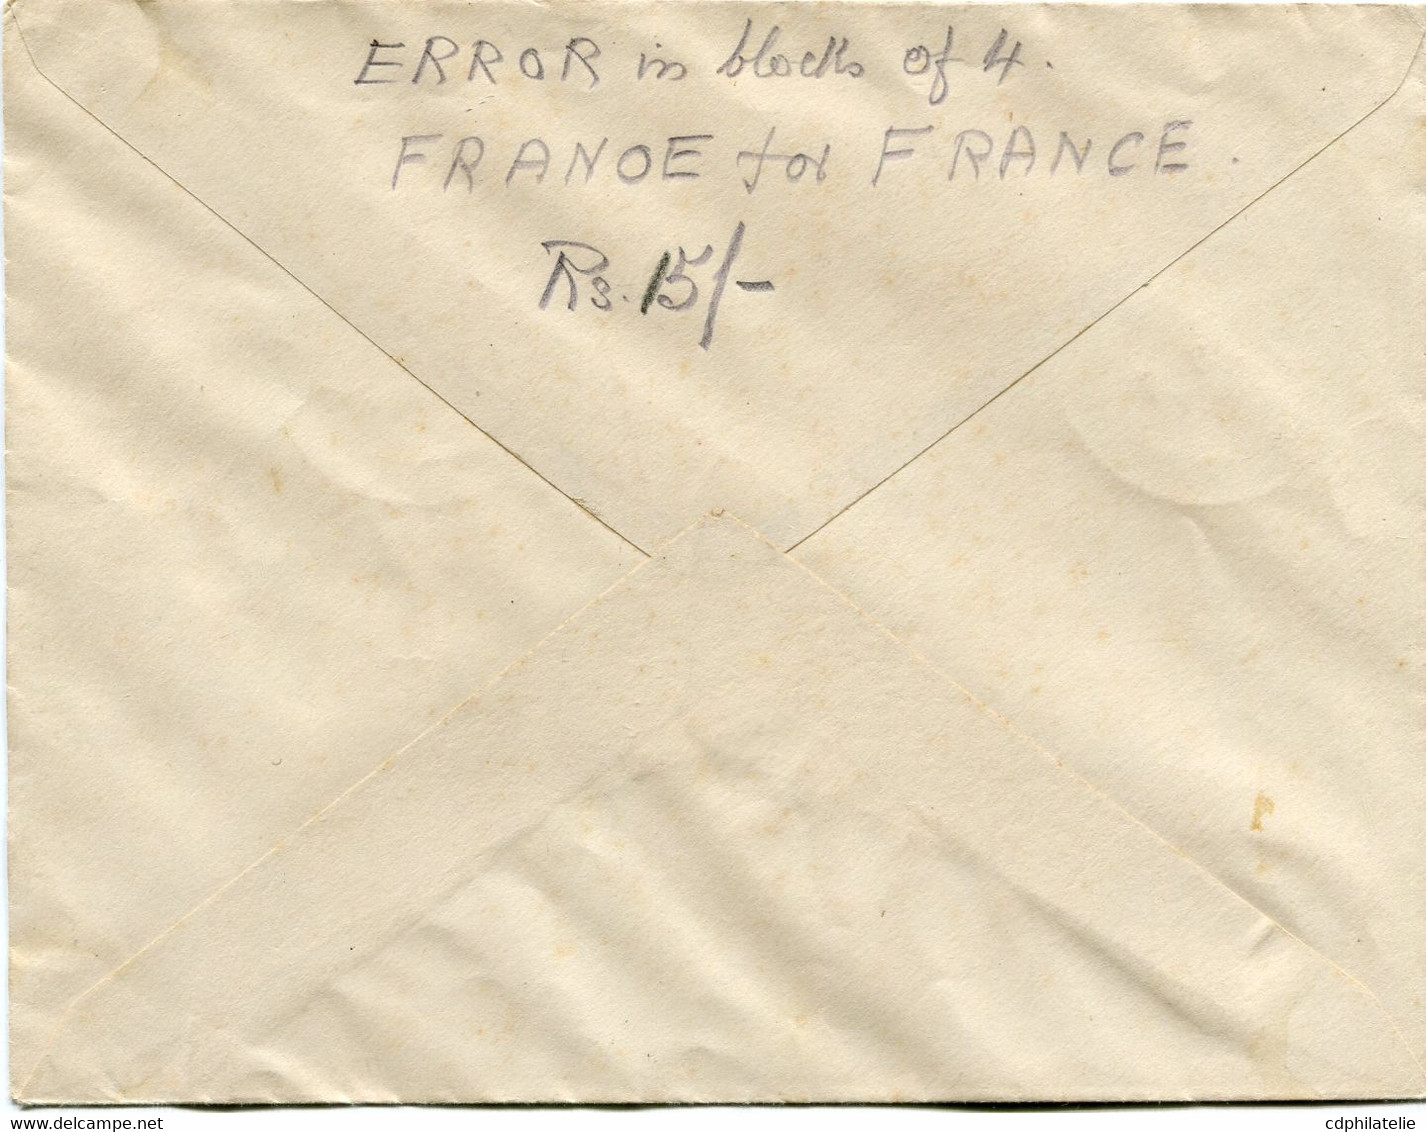 INDE FRANCAISE FRANCE LIBRE LETTRE AFFRANCHIE AVEC UN BLOC DE 4 AVEC VARIETE "FRANOE" DEPART INDE...5-8-1944 PONDICHERY - Brieven En Documenten